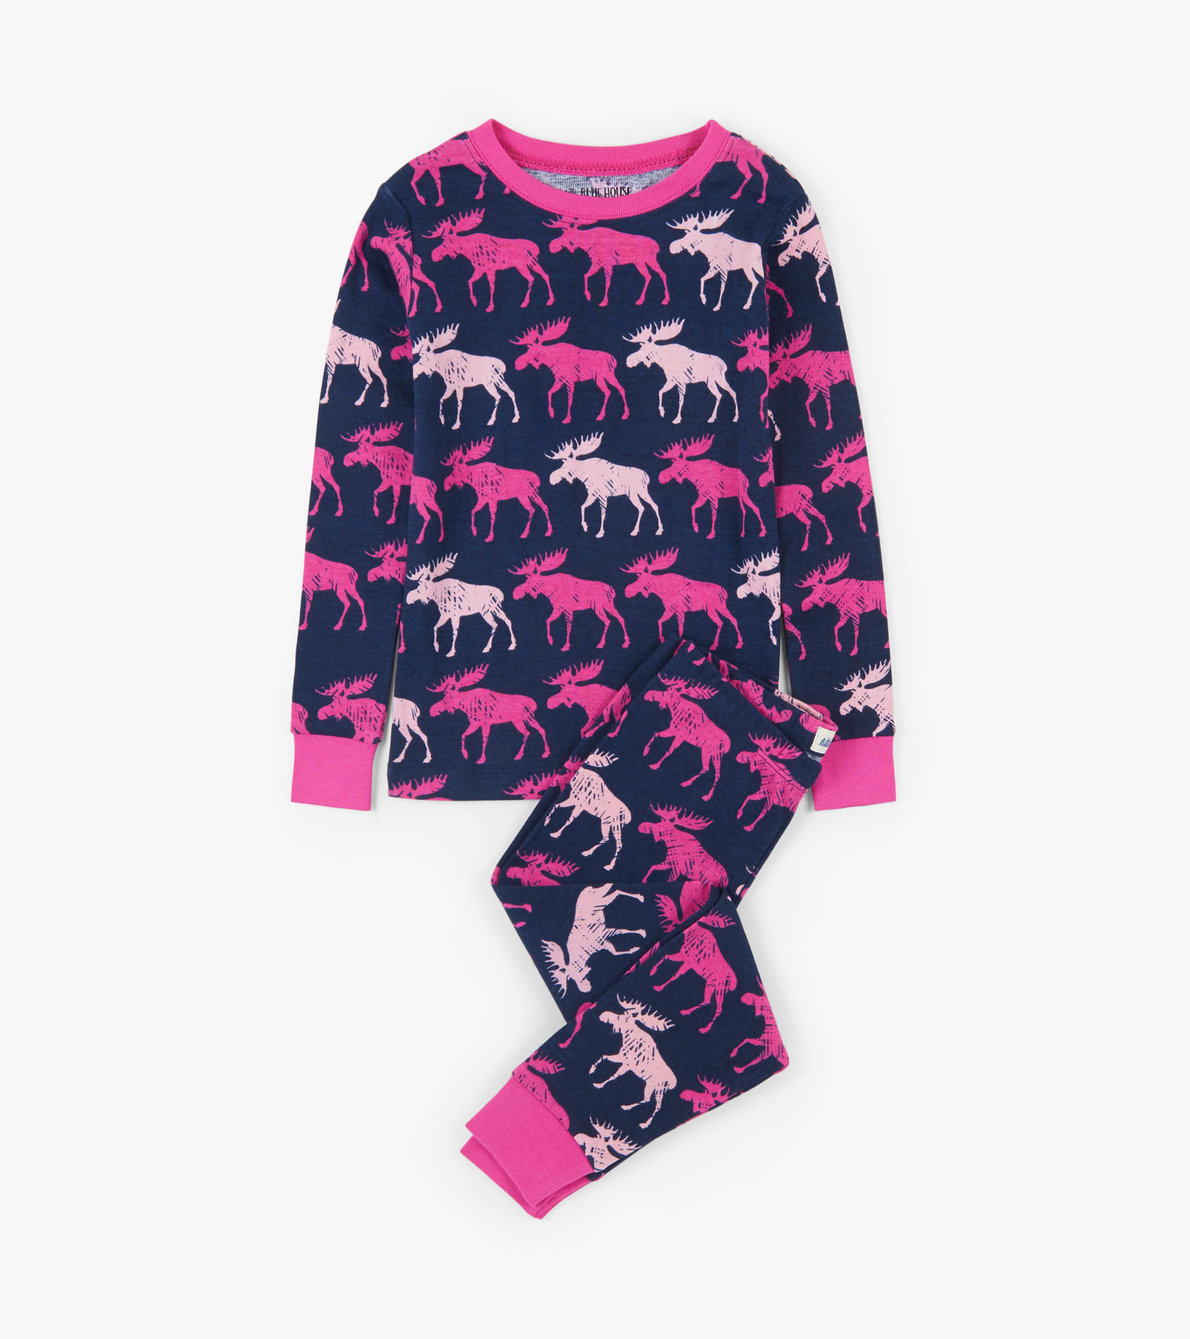 View larger image of Cottage Moose Kids Pajama Set